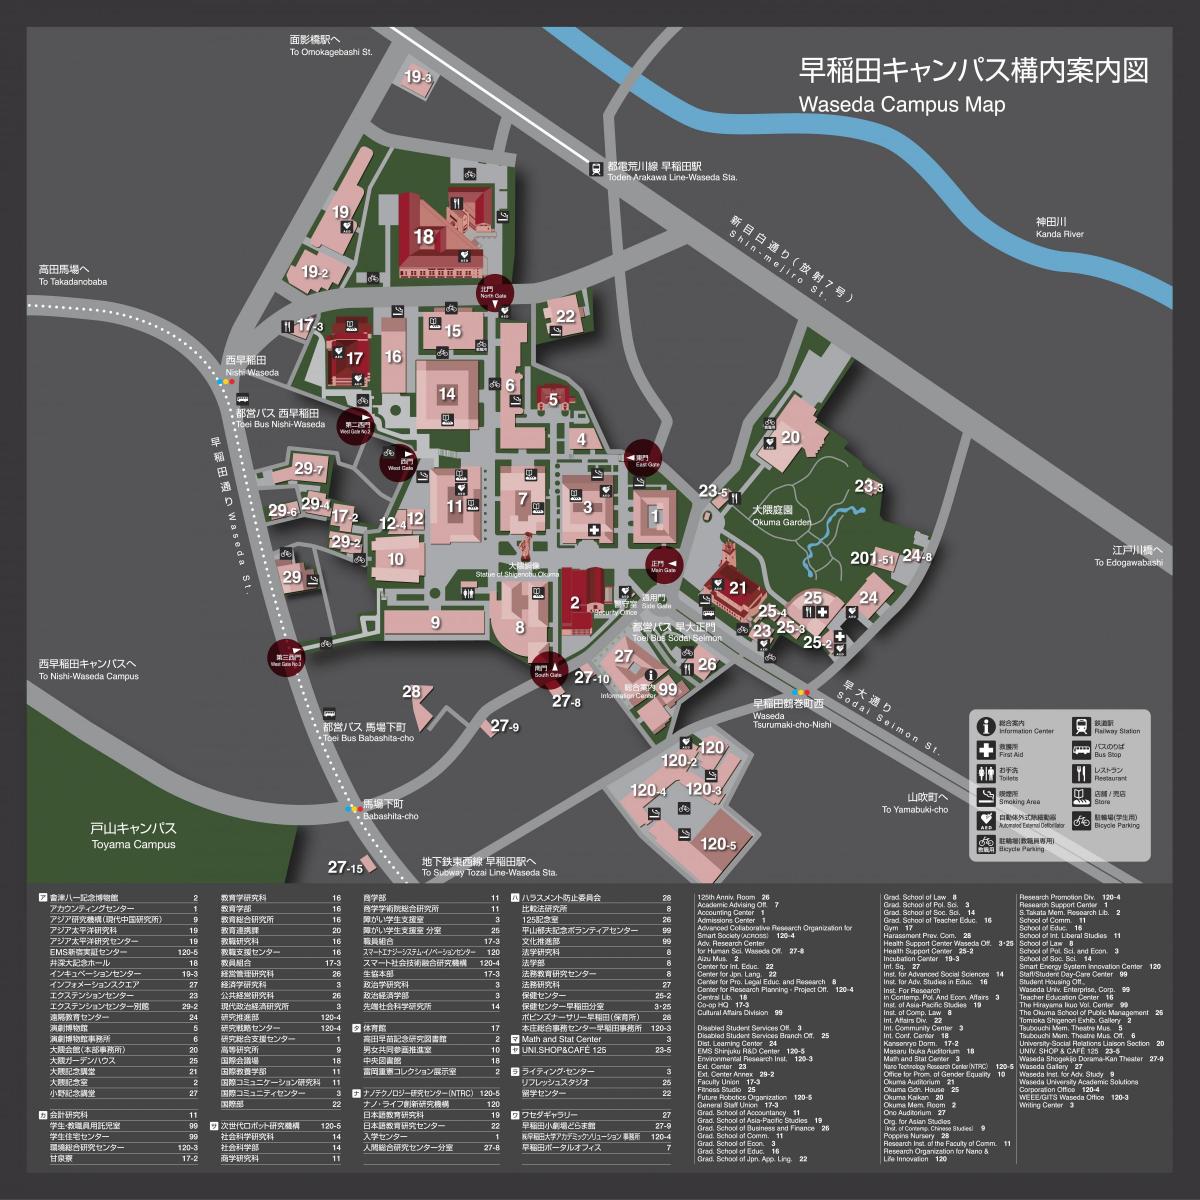 a universidade de waseda mapa do campus.